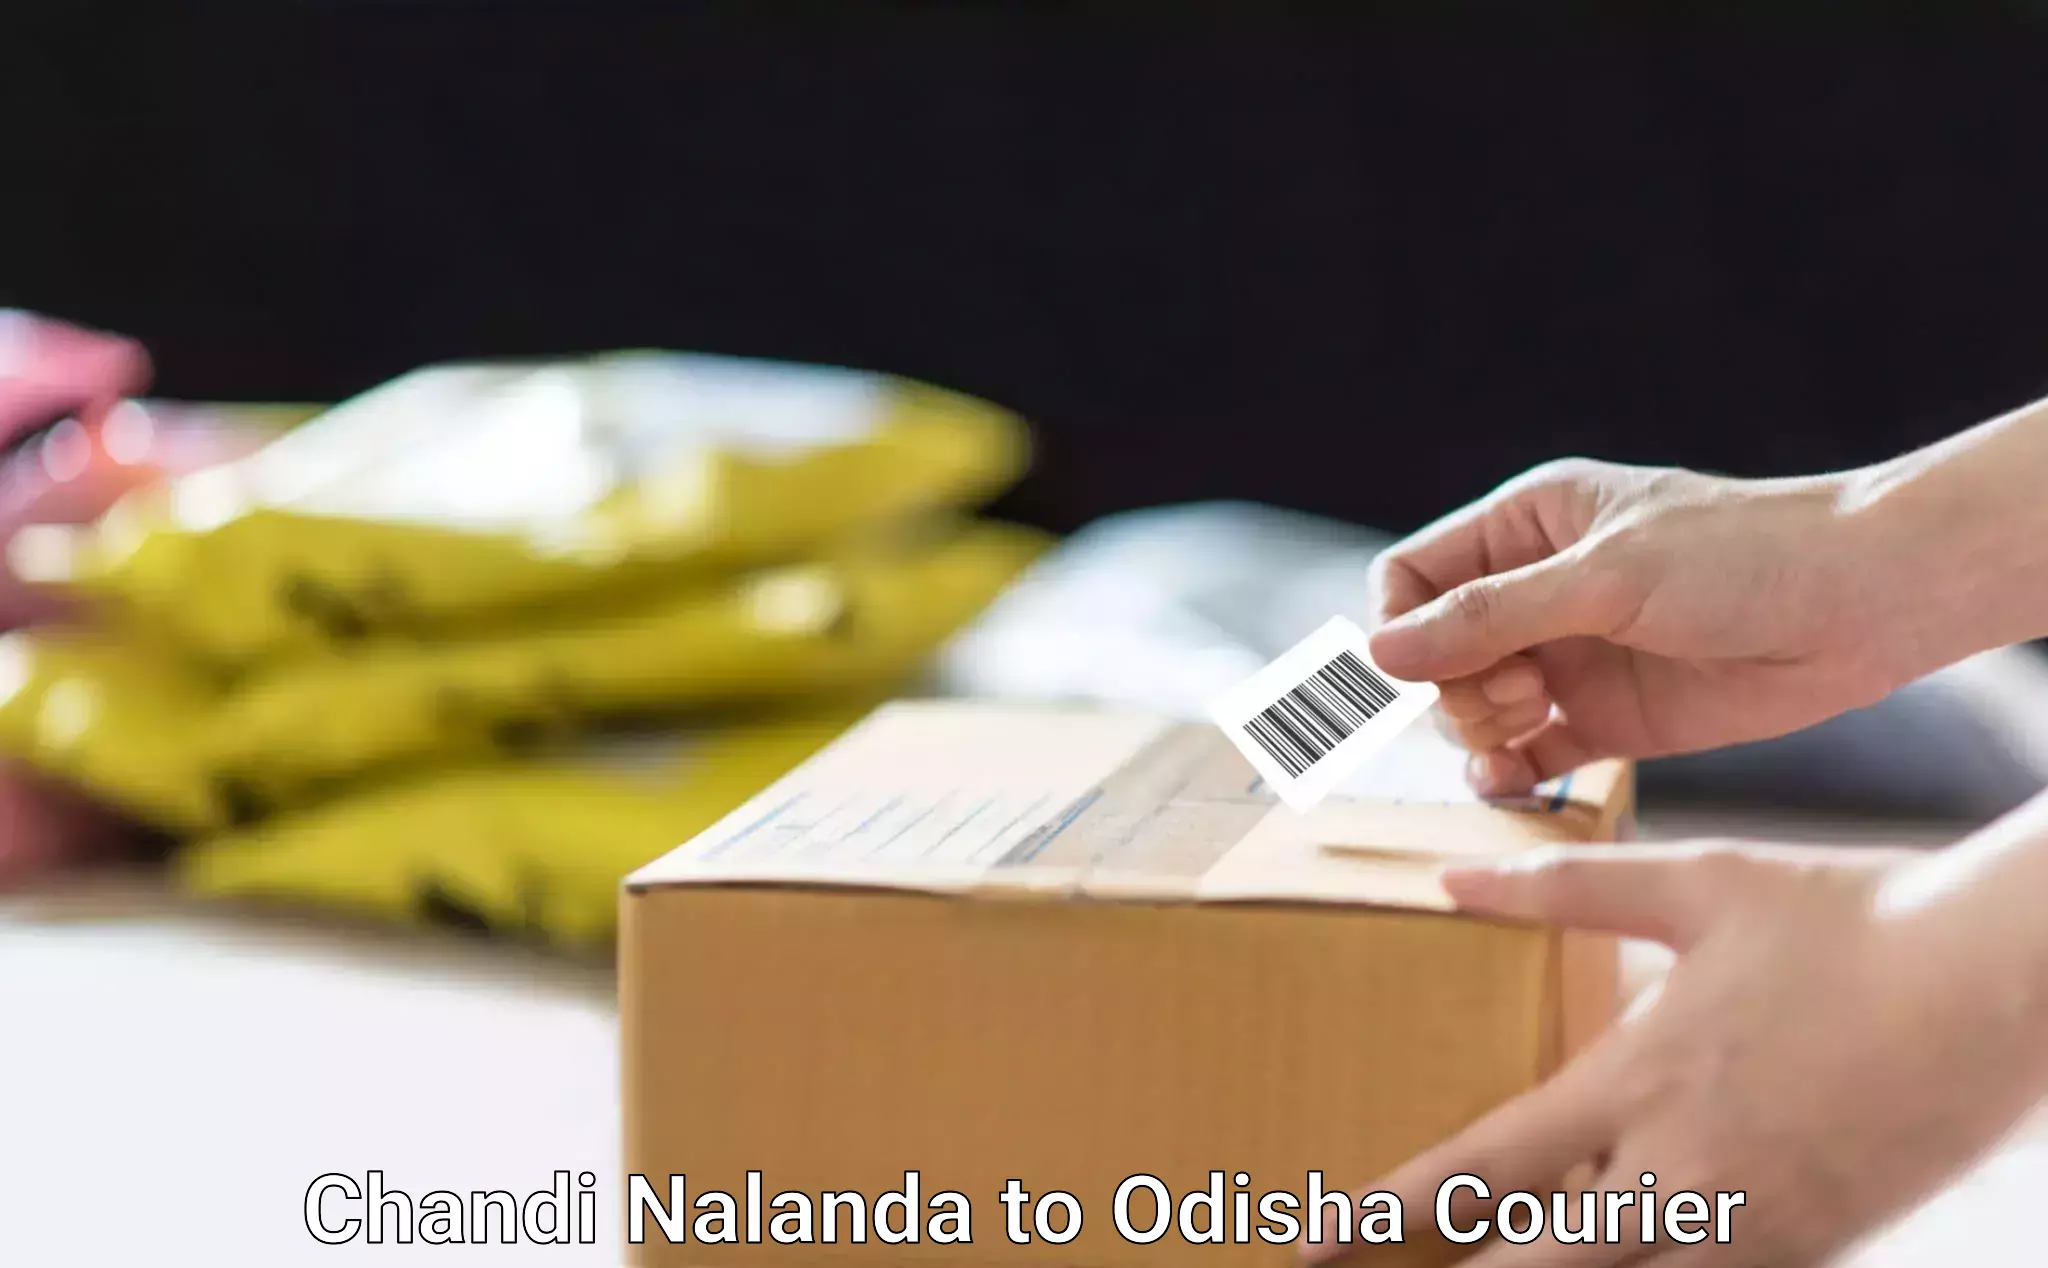 Comprehensive goods transport Chandi Nalanda to Odisha